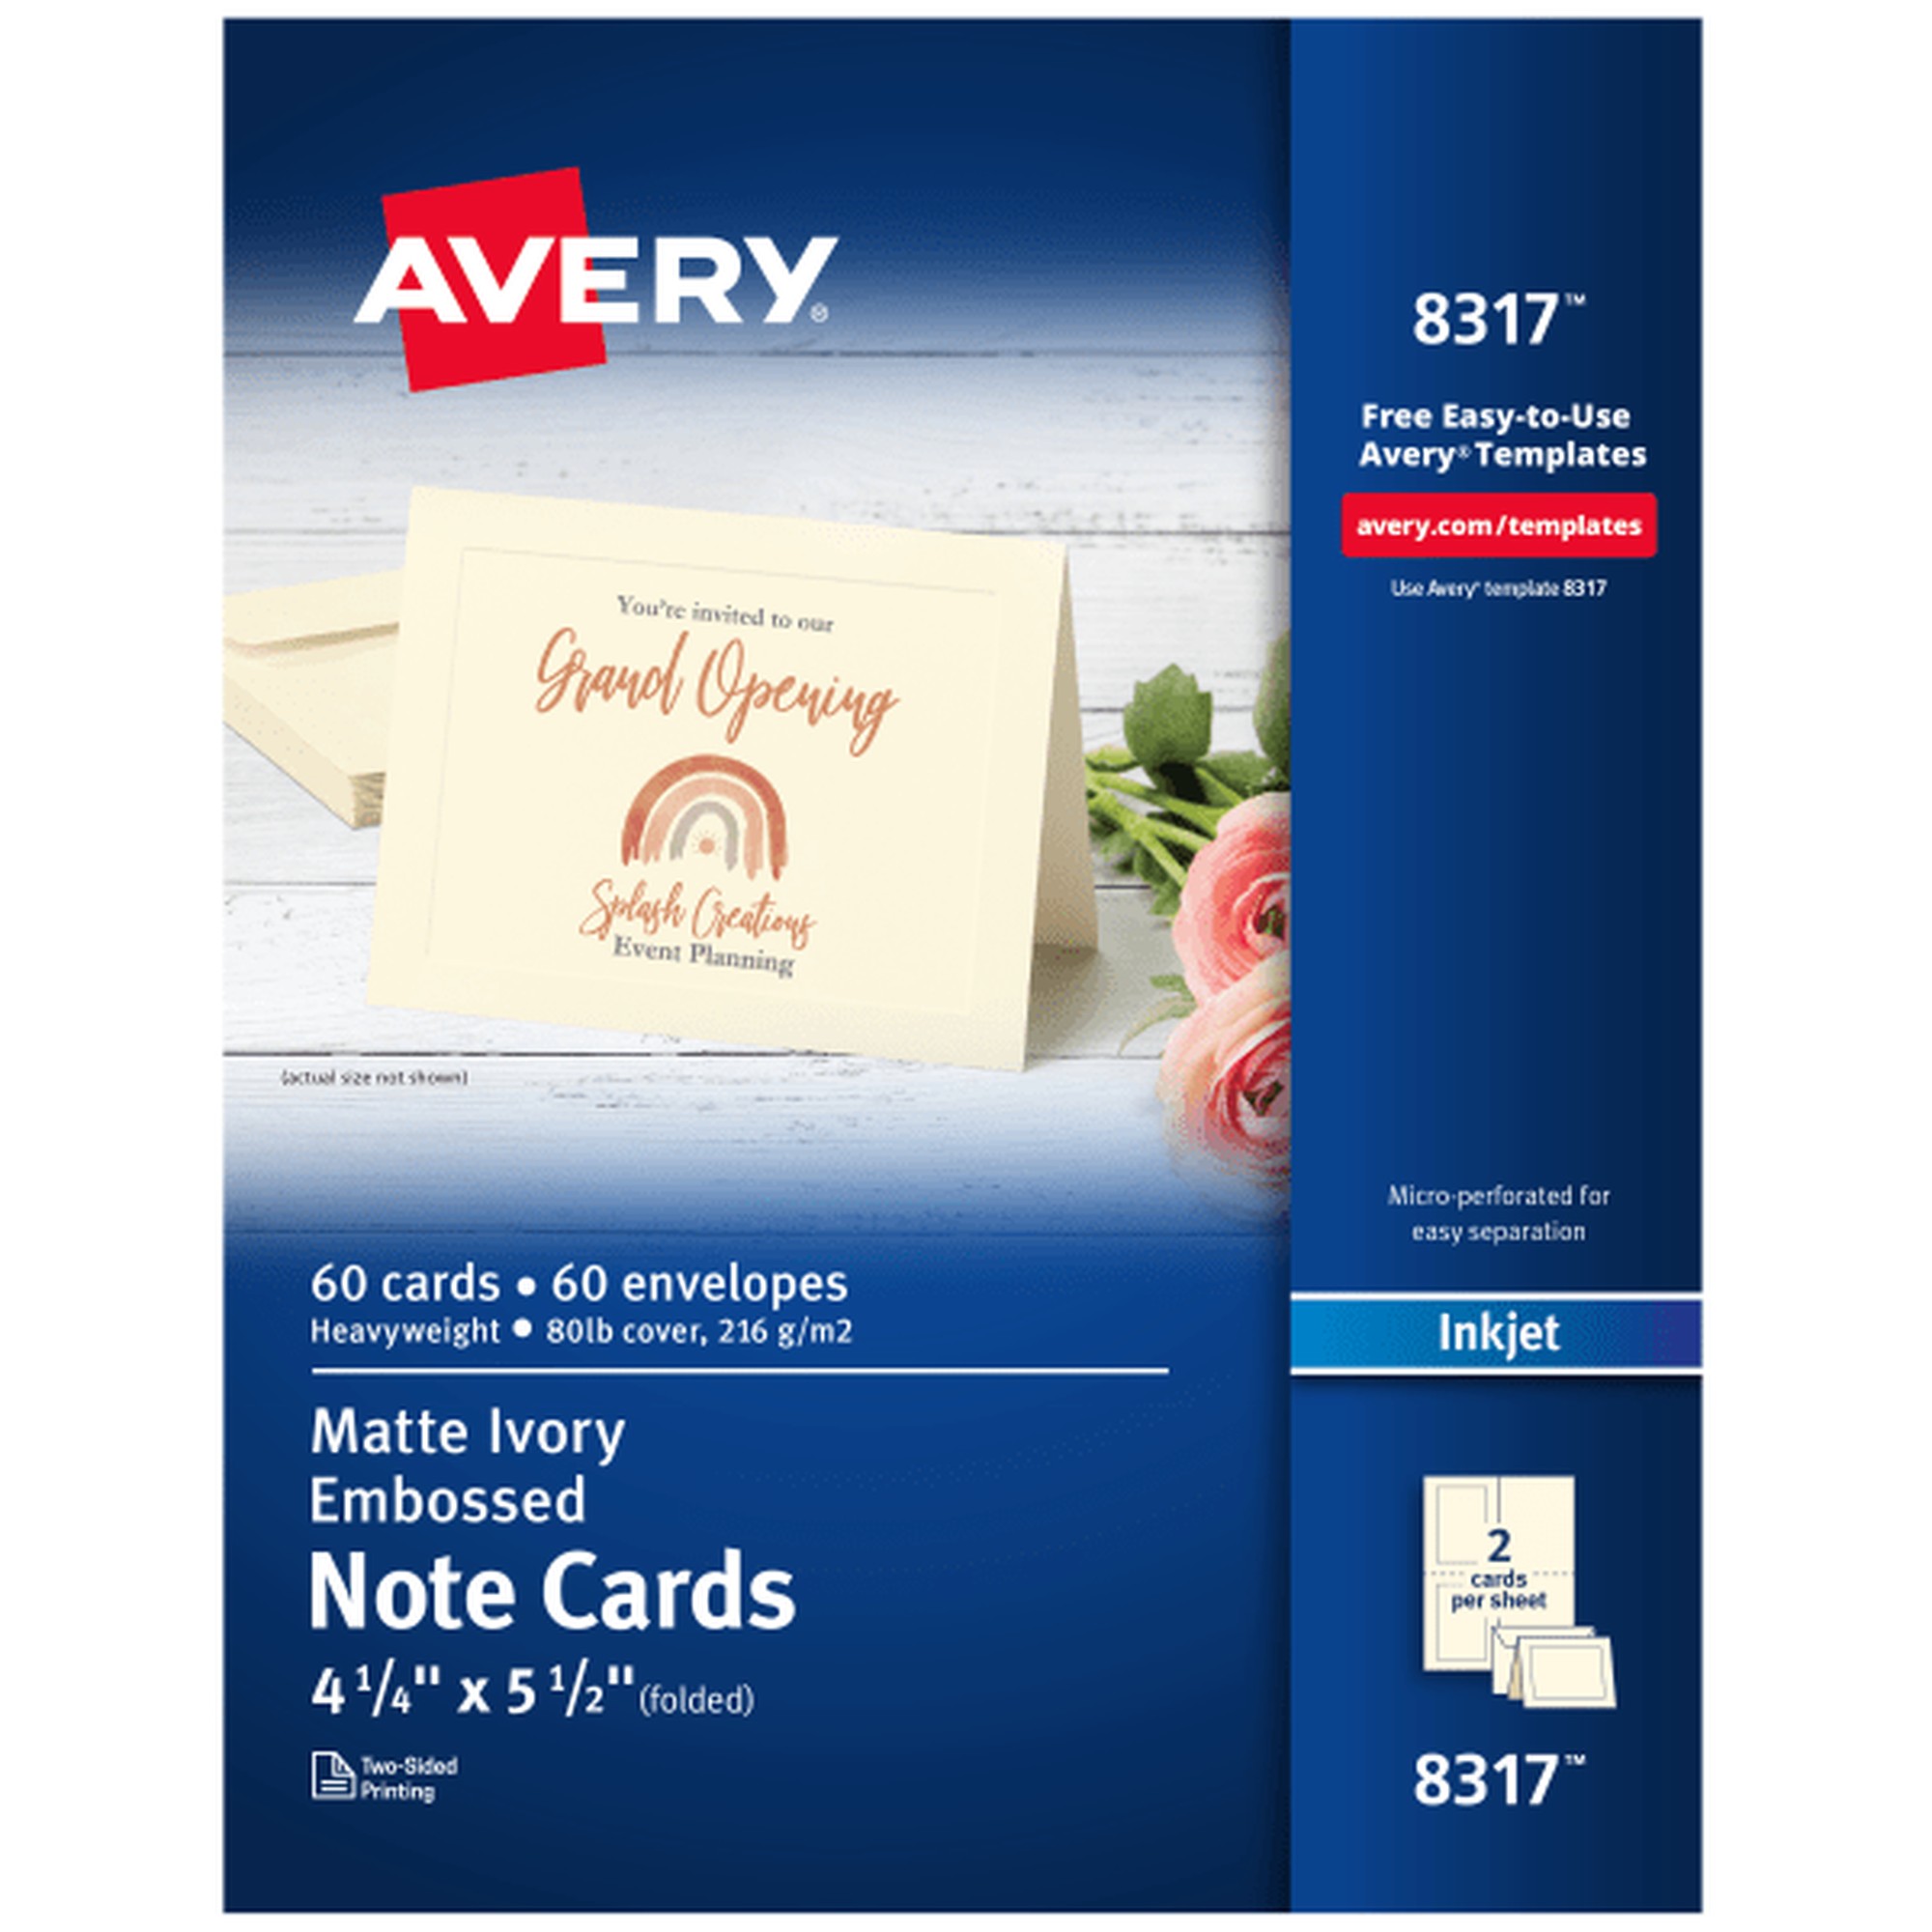 Embossed Note Cards, Inkjet, 4 1/4 x 5 1/2, Matte Ivory, 60/Pk w/Envelopes